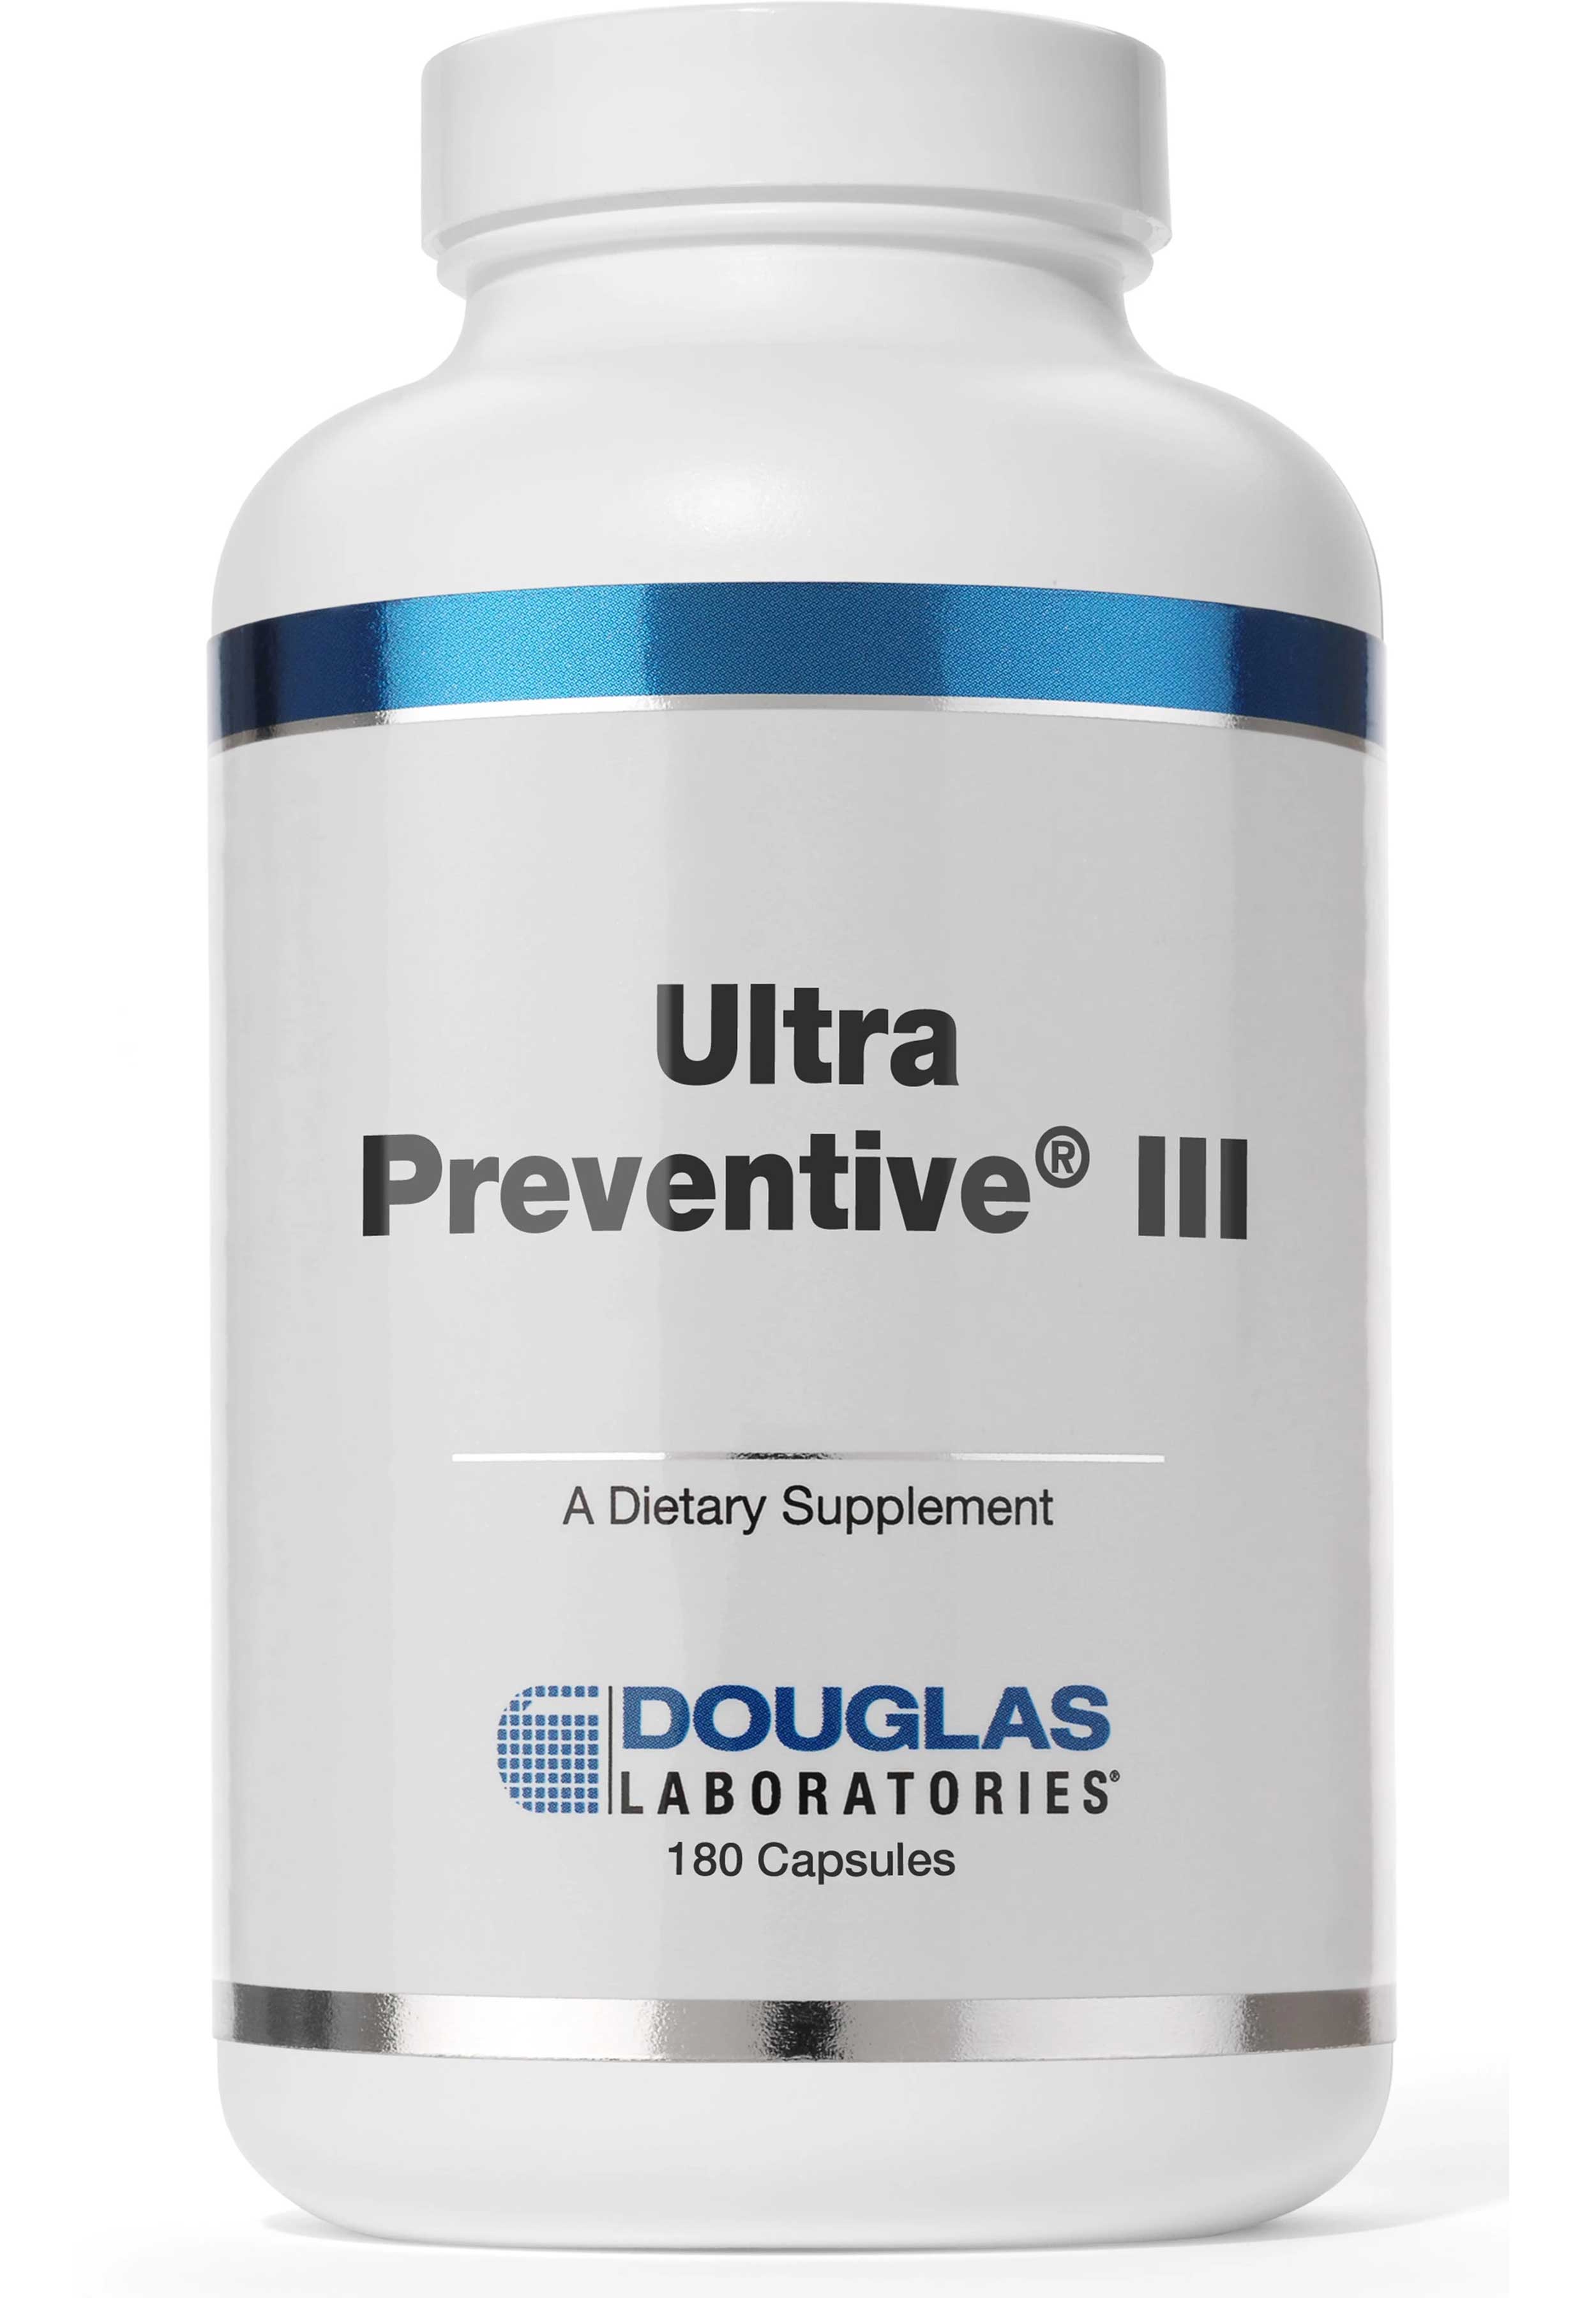 Douglas Laboratories Ultra Preventive III Capsules